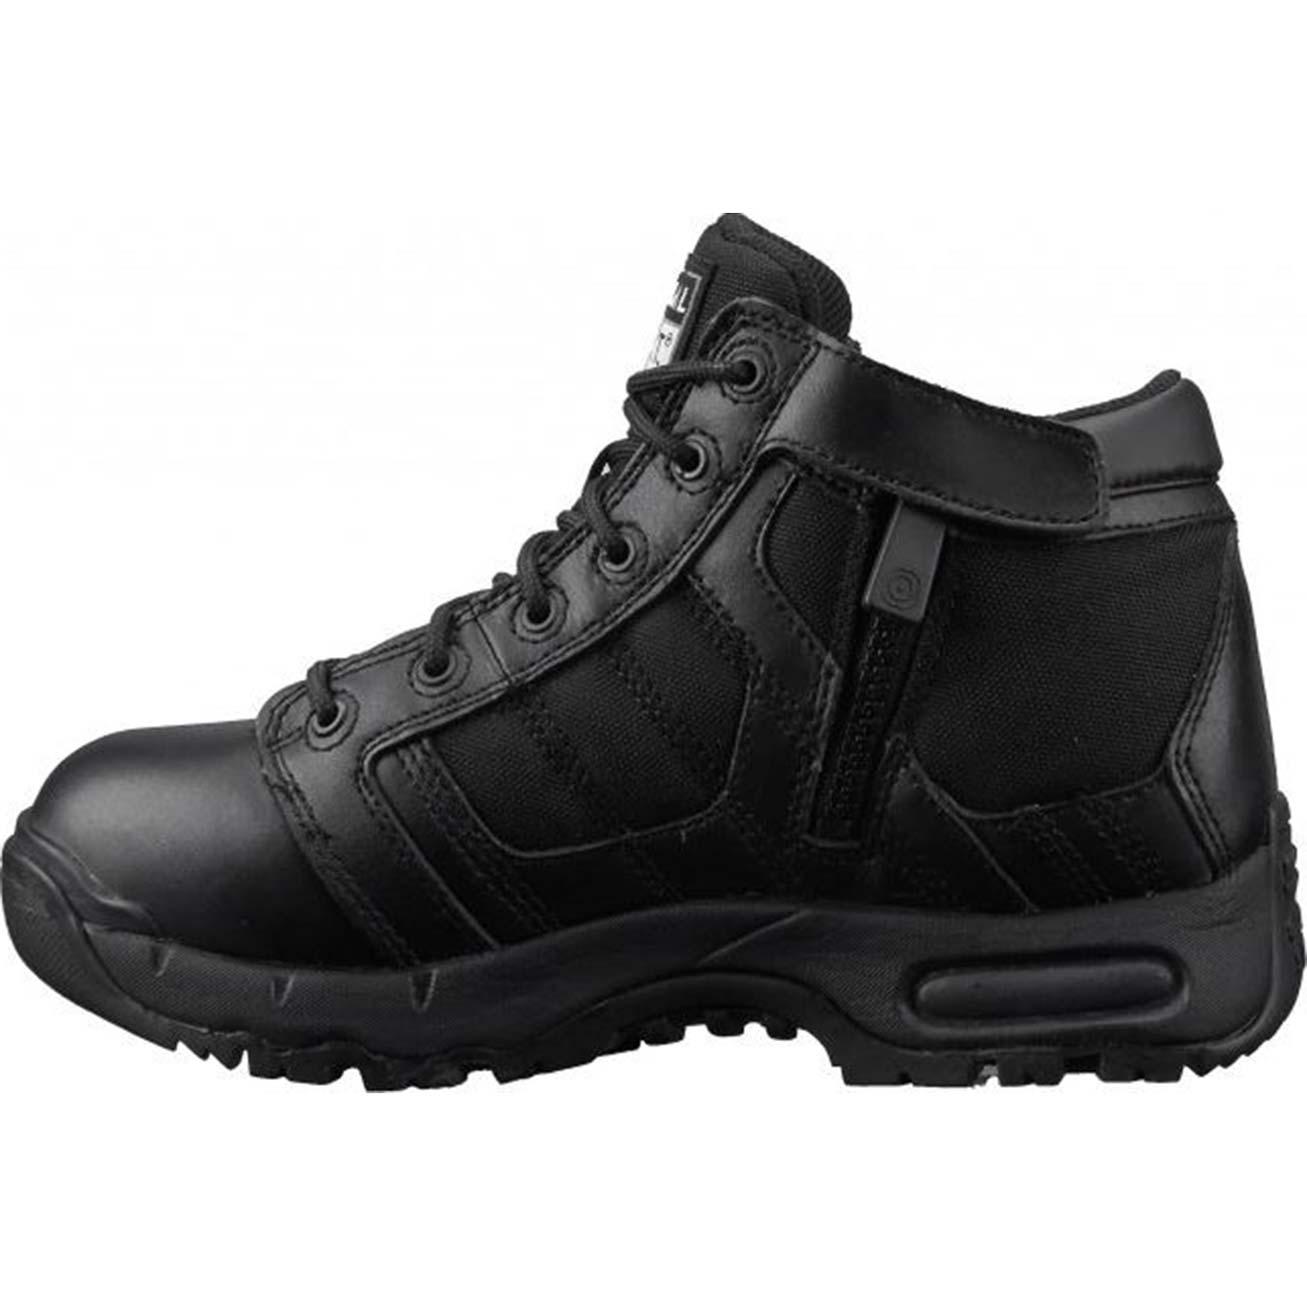 Women's Black Military Waterproof Side-Zip Duty Work Boot - SB125411